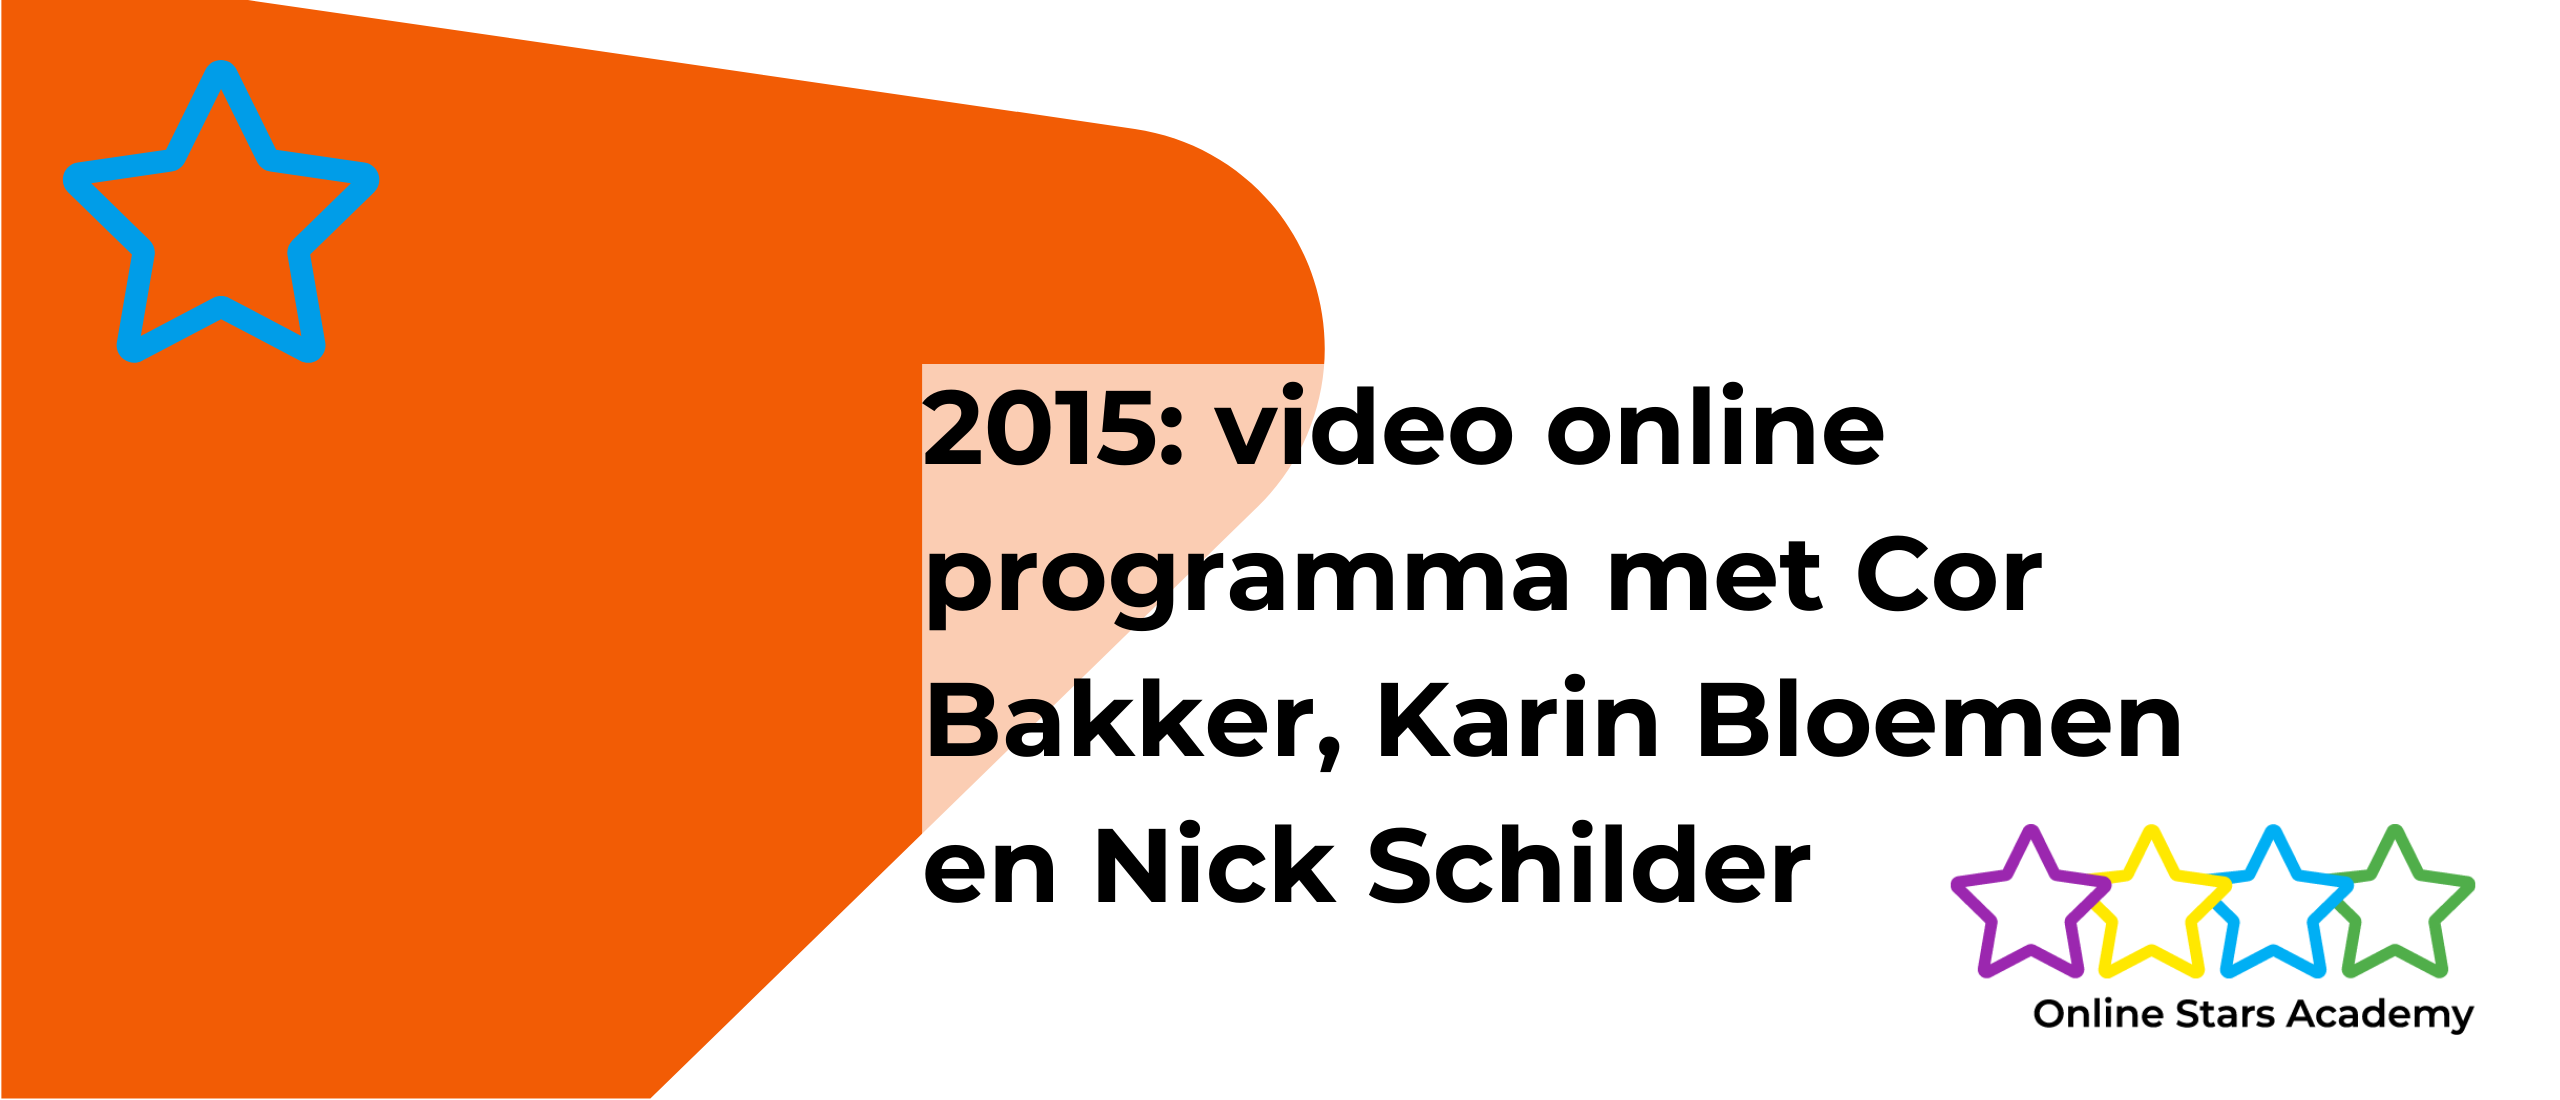 Keynote Youtube bij Utrechtse Communicatie Kring